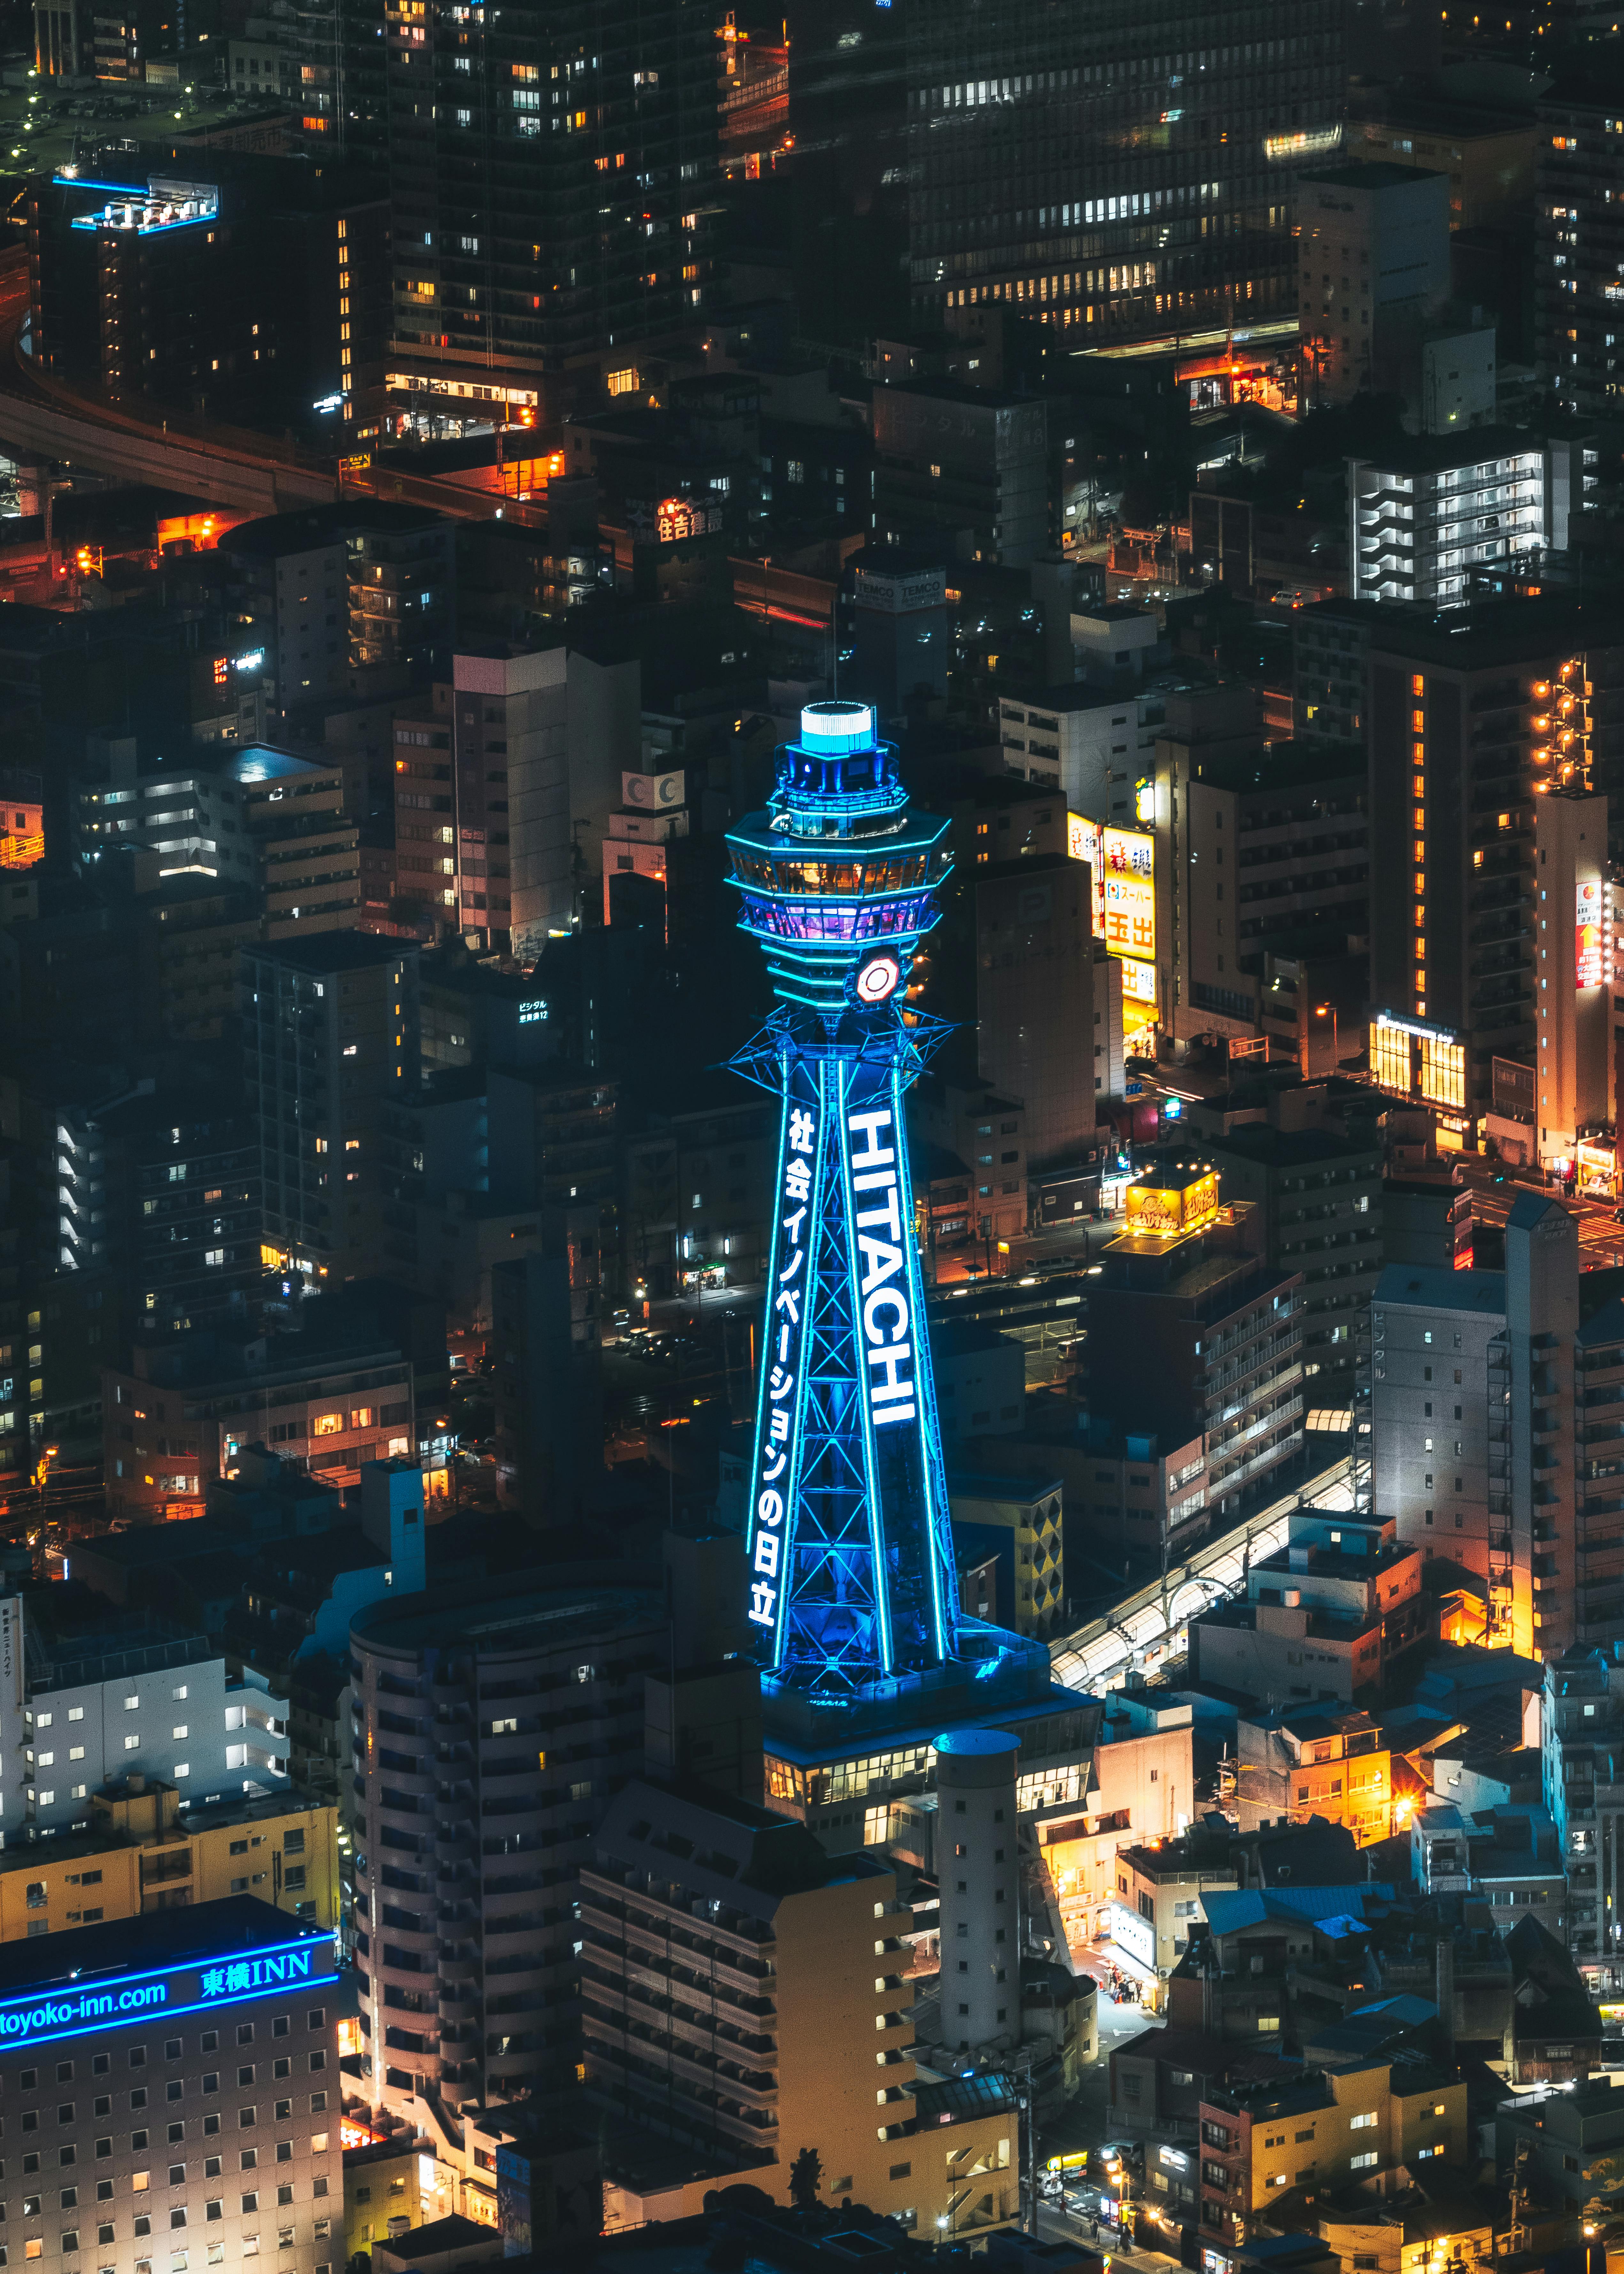 Osaka: Với những toà nhà cao chọc trời, đèn neon lung linh và ẩm thực đặc sắc, Osaka – thành phố lớn nhì Nhật Bản chắc chắn sẽ làm bạn say mê. Xem hình ảnh về Osaka để khám phá tất cả những điều thú vị của thành phố này nhé!